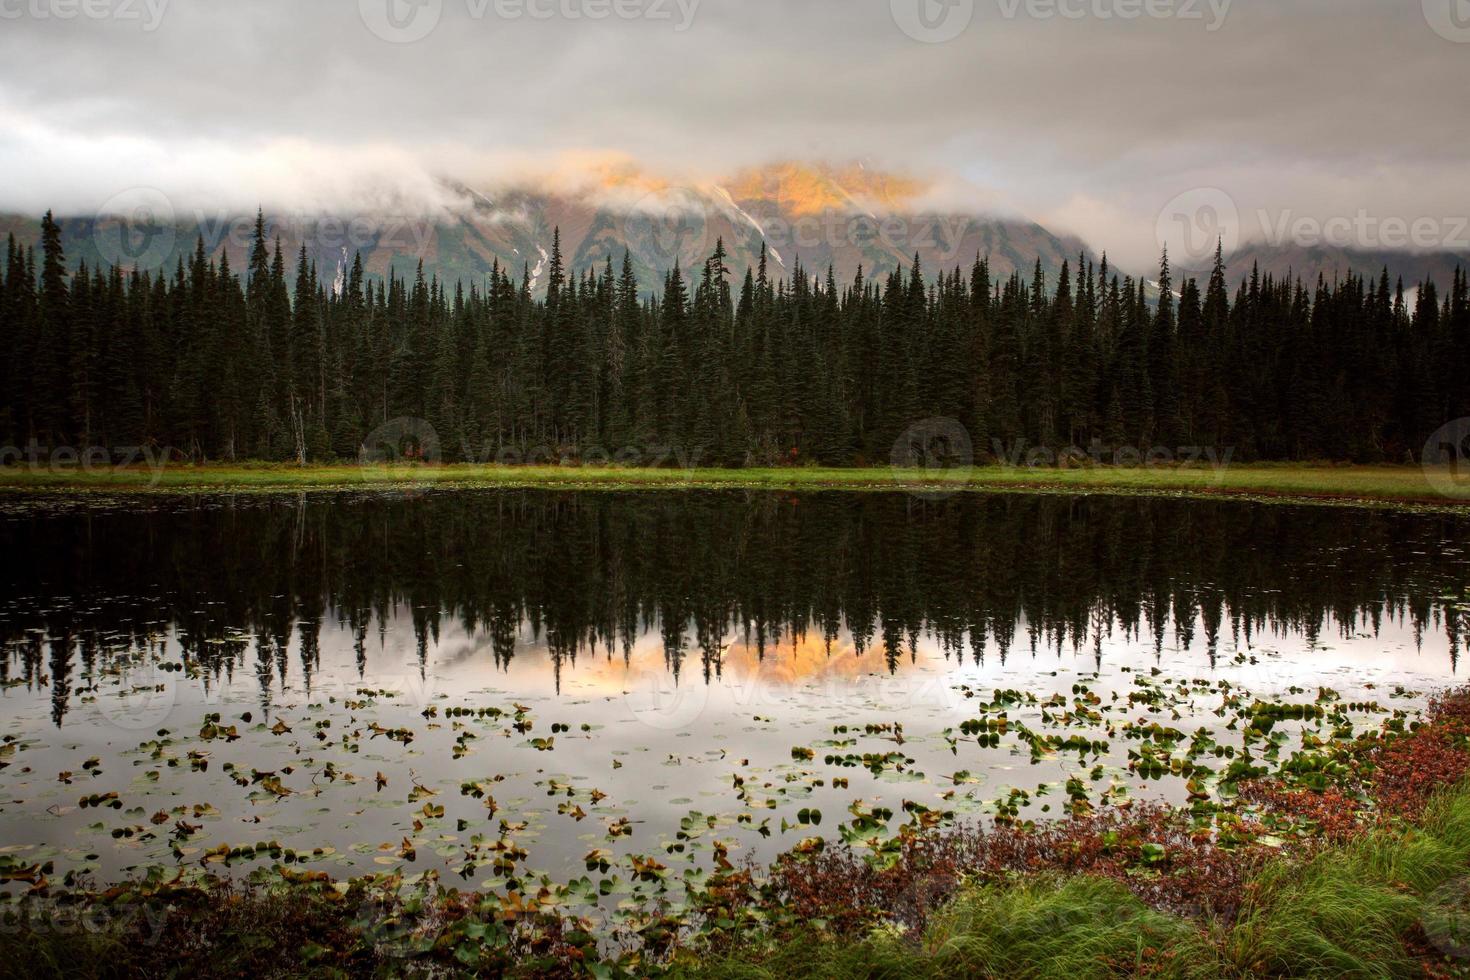 riflessioni su un lago della British Columbia foto